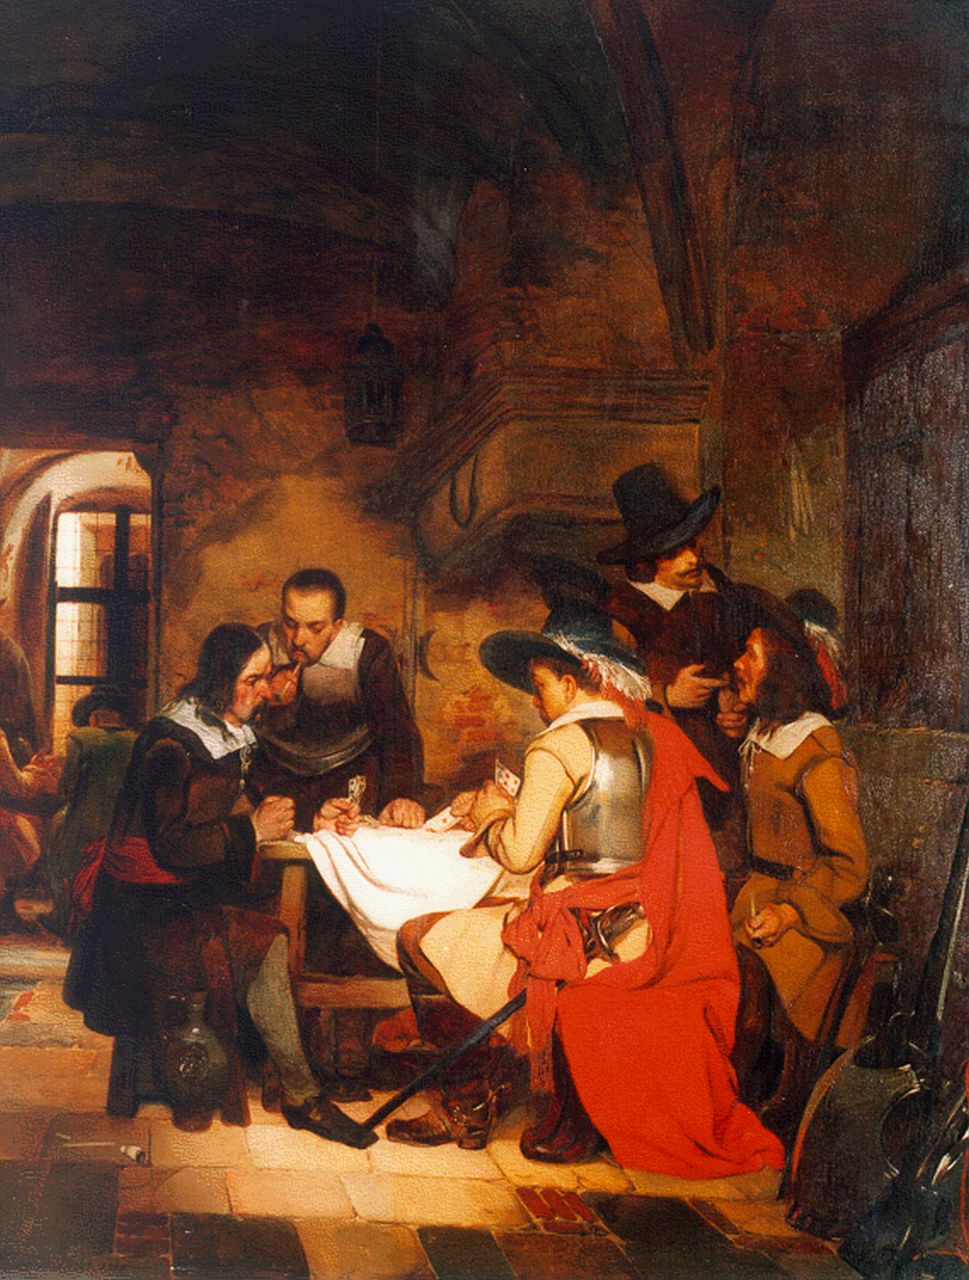 Franciscus Willems | De kaartspelers, oil on panel, 99.0 x 81.0 cm, gesigneerd l.o. and gedateerd 1842